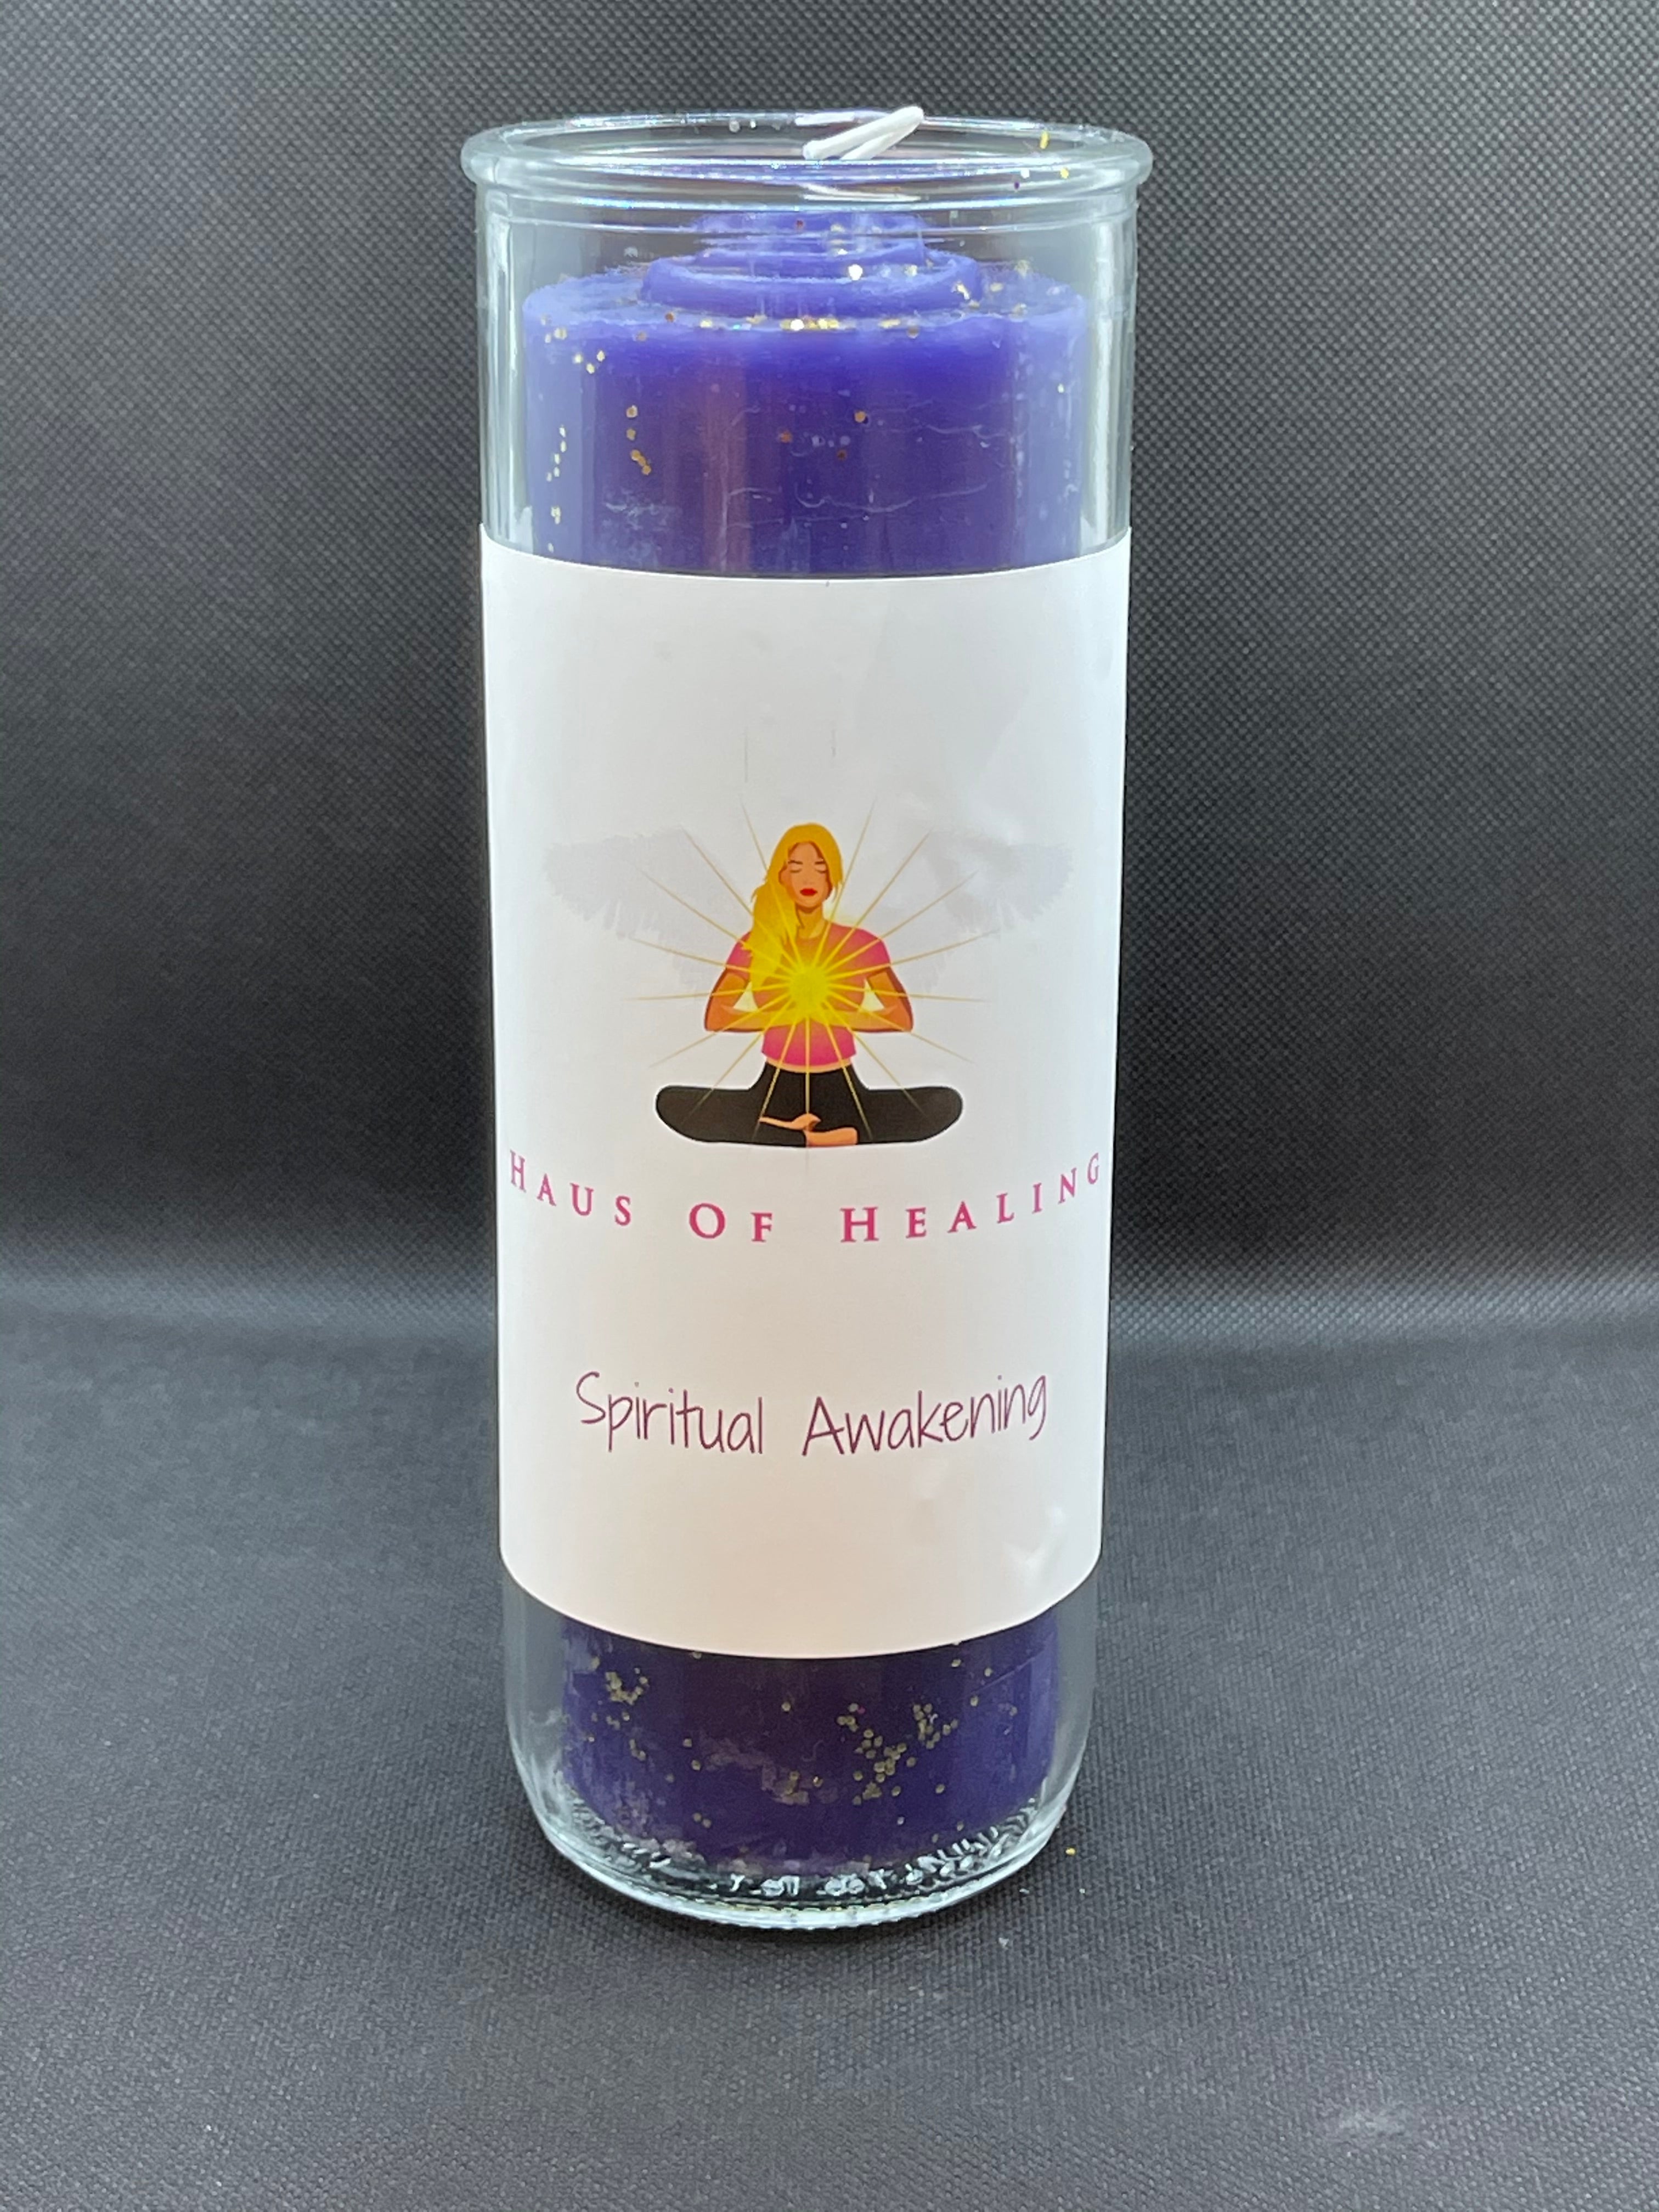 Previous Version Overstock: Haus Of Healing Intention Candle: Spiritual Awakening